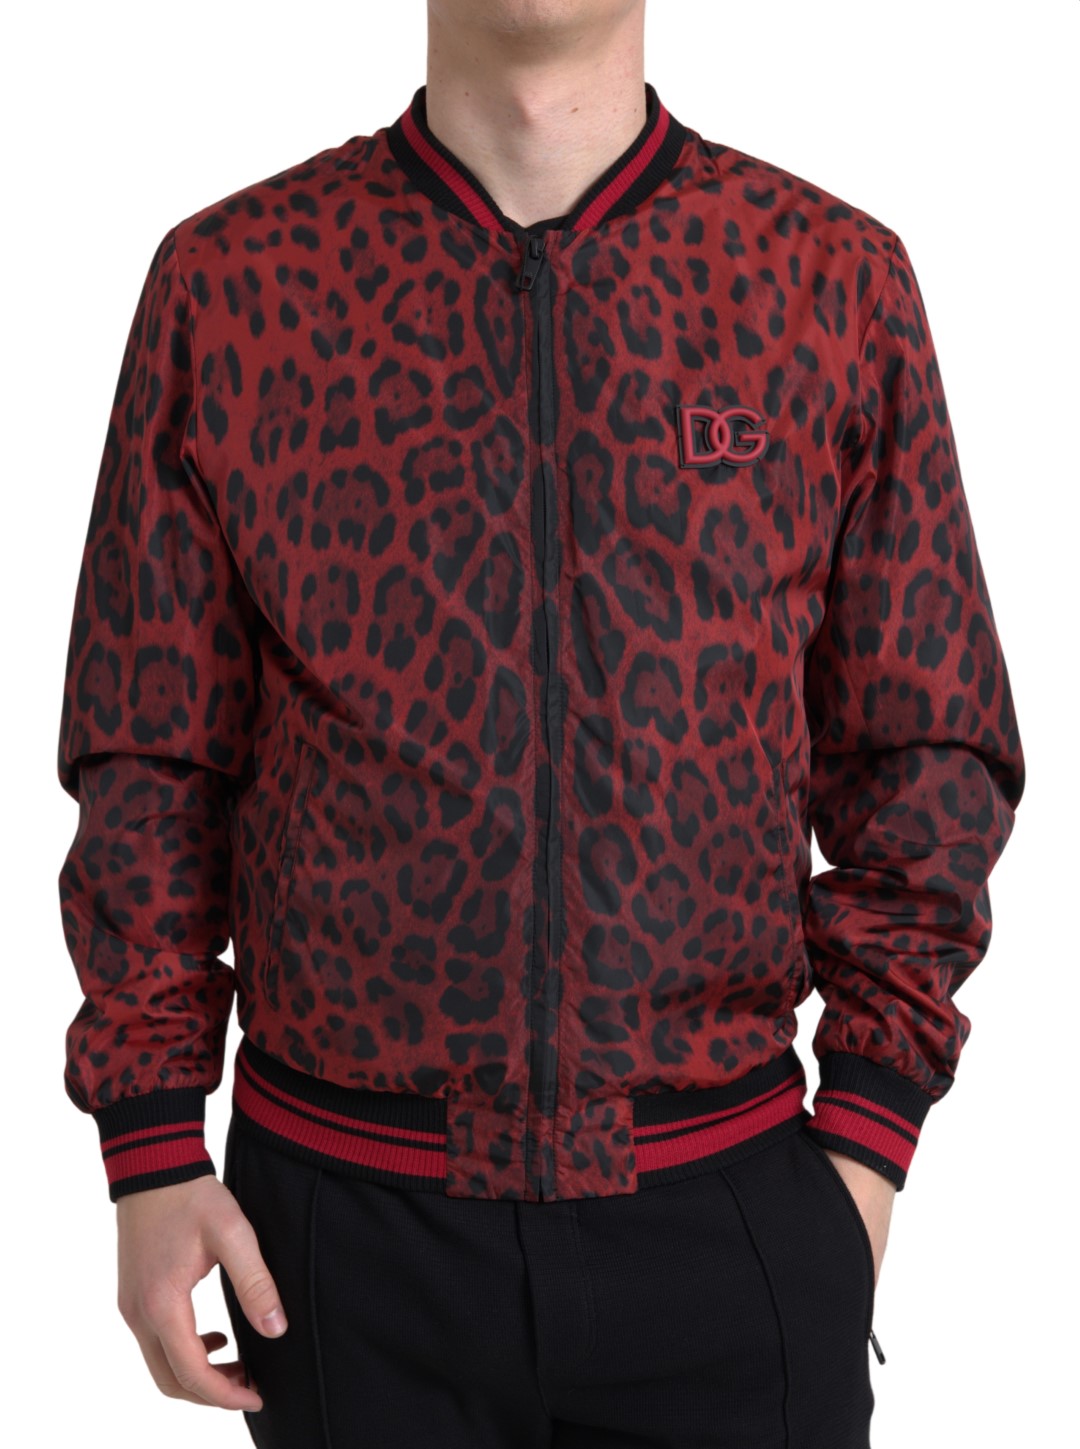 Red Leopard Bomber Short Coat Jacket